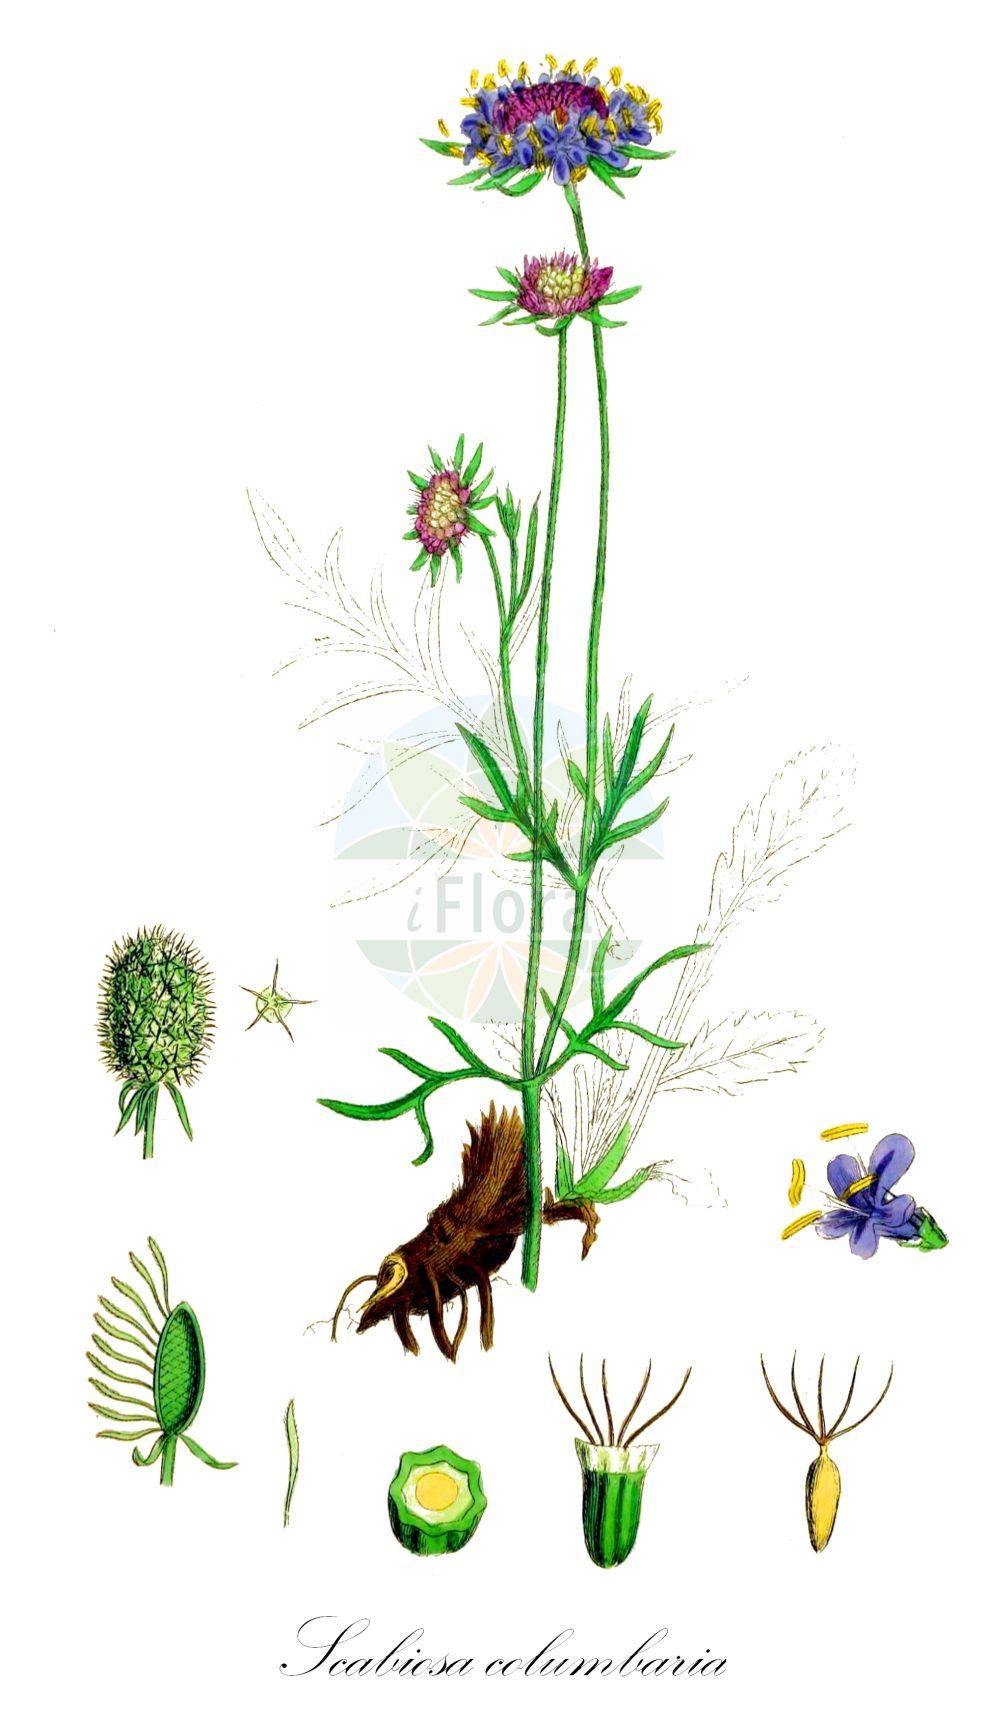 Historische Abbildung von Scabiosa columbaria (Tauben-Skabiose - Small Scabious). Das Bild zeigt Blatt, Bluete, Frucht und Same. ---- Historical Drawing of Scabiosa columbaria (Tauben-Skabiose - Small Scabious). The image is showing leaf, flower, fruit and seed.(Scabiosa columbaria,Tauben-Skabiose,Small Scabious,Scabiosa affinis,Scabiosa amoena,Scabiosa angulata,Scabiosa banatica,Scabiosa ceratophylla,Scabiosa columnae,Scabiosa communis,Scabiosa columbaria,Tauben-Skabiose,Small Scabious,Dove Scabious,Dove Pincushions,Scabiosa,Skabiose,Scabious,Caprifoliaceae,Geißblattgewächse,Honeysuckle family,Blatt,Bluete,Frucht,Same,leaf,flower,fruit,seed,Sowerby (1790-1813))